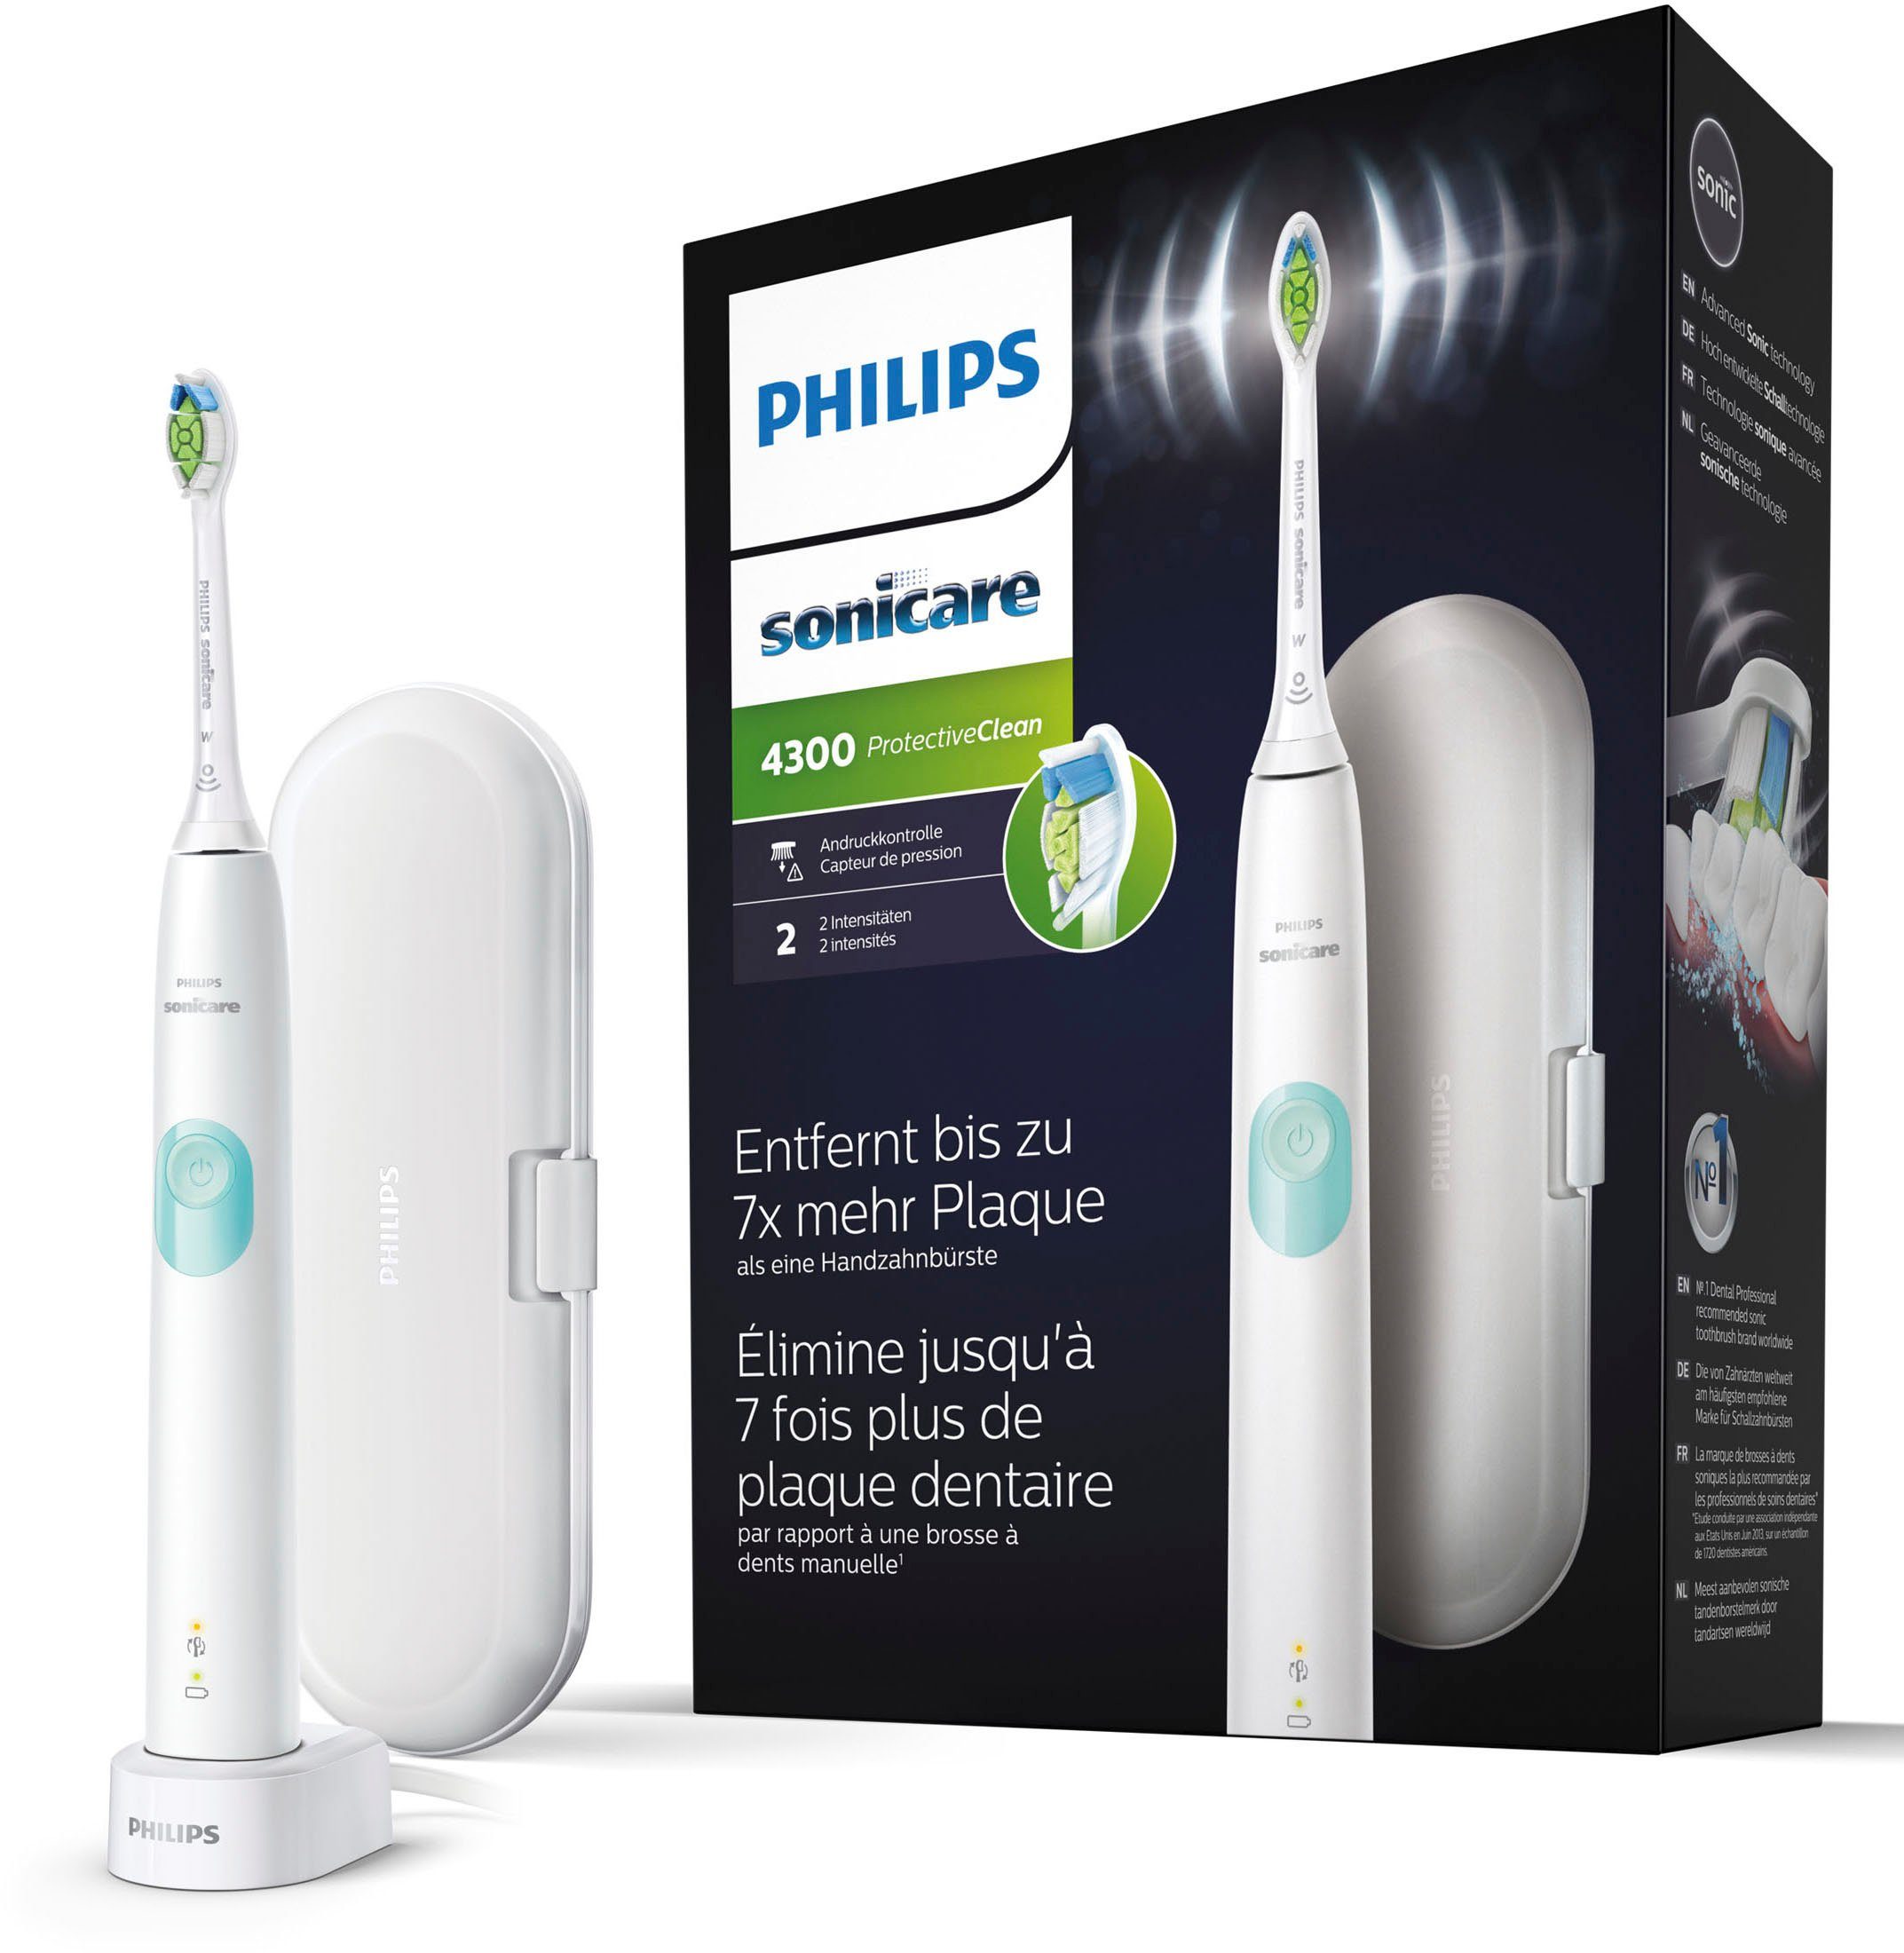 Philips Sonicare Elektrische Zahnbürste ProtectiveClean 4300 HX6807/28,  Aufsteckbürsten: 1 St., mit Schalltechnologie und BrushSync Funktion, inkl.  Ladestation und Reiseetui online kaufen | OTTO